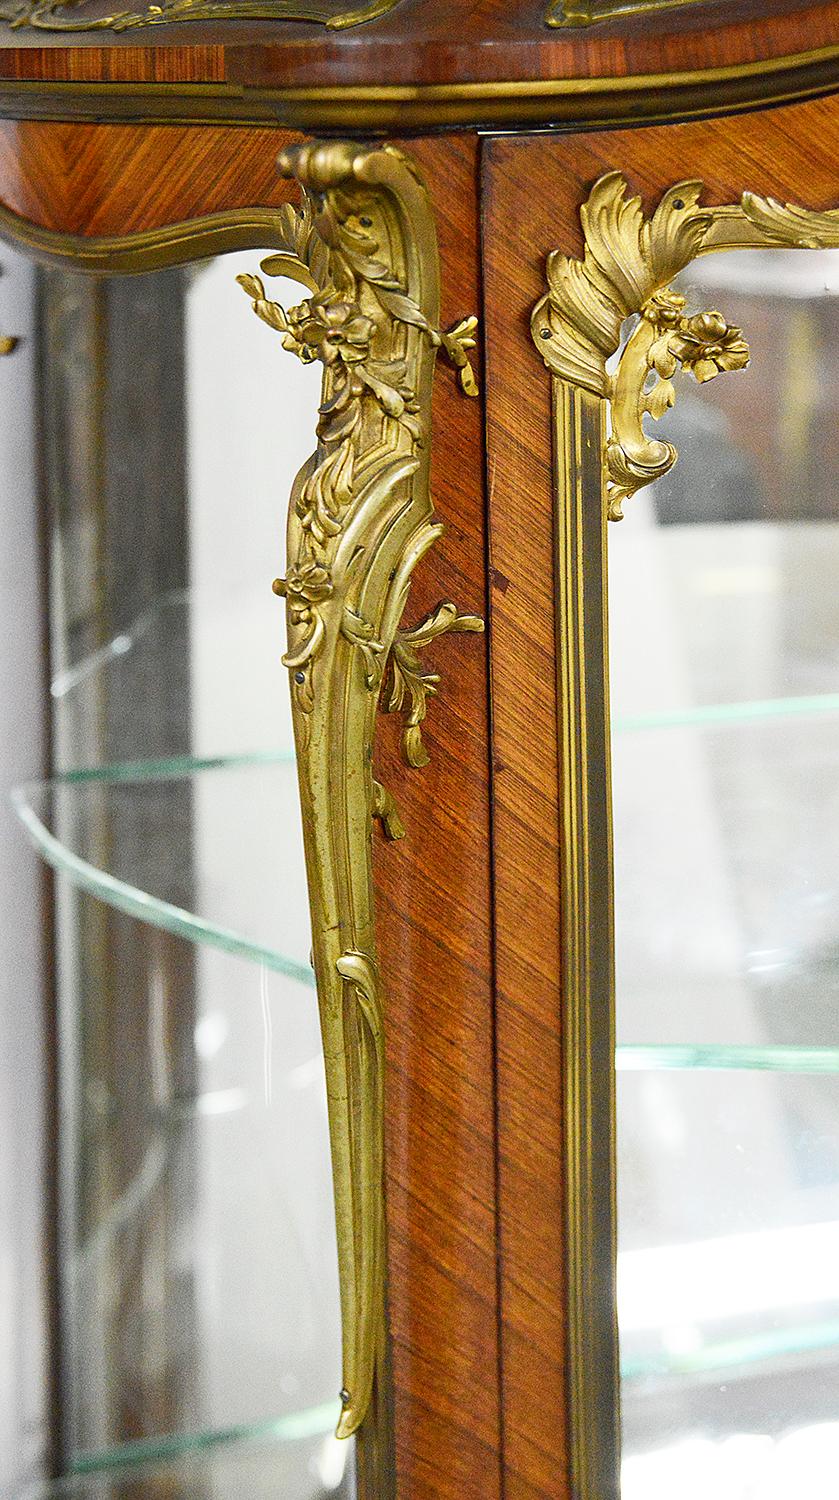 Vitrine de style Louis XVI de la fin du 19ème siècle en marqueterie de bombe, ayant son dessus en marbre Brèche Violette d'origine, de magnifiques montures en bronze doré ciselé et feuillagé, des étagères ajustables vitrées à l'intérieur, des